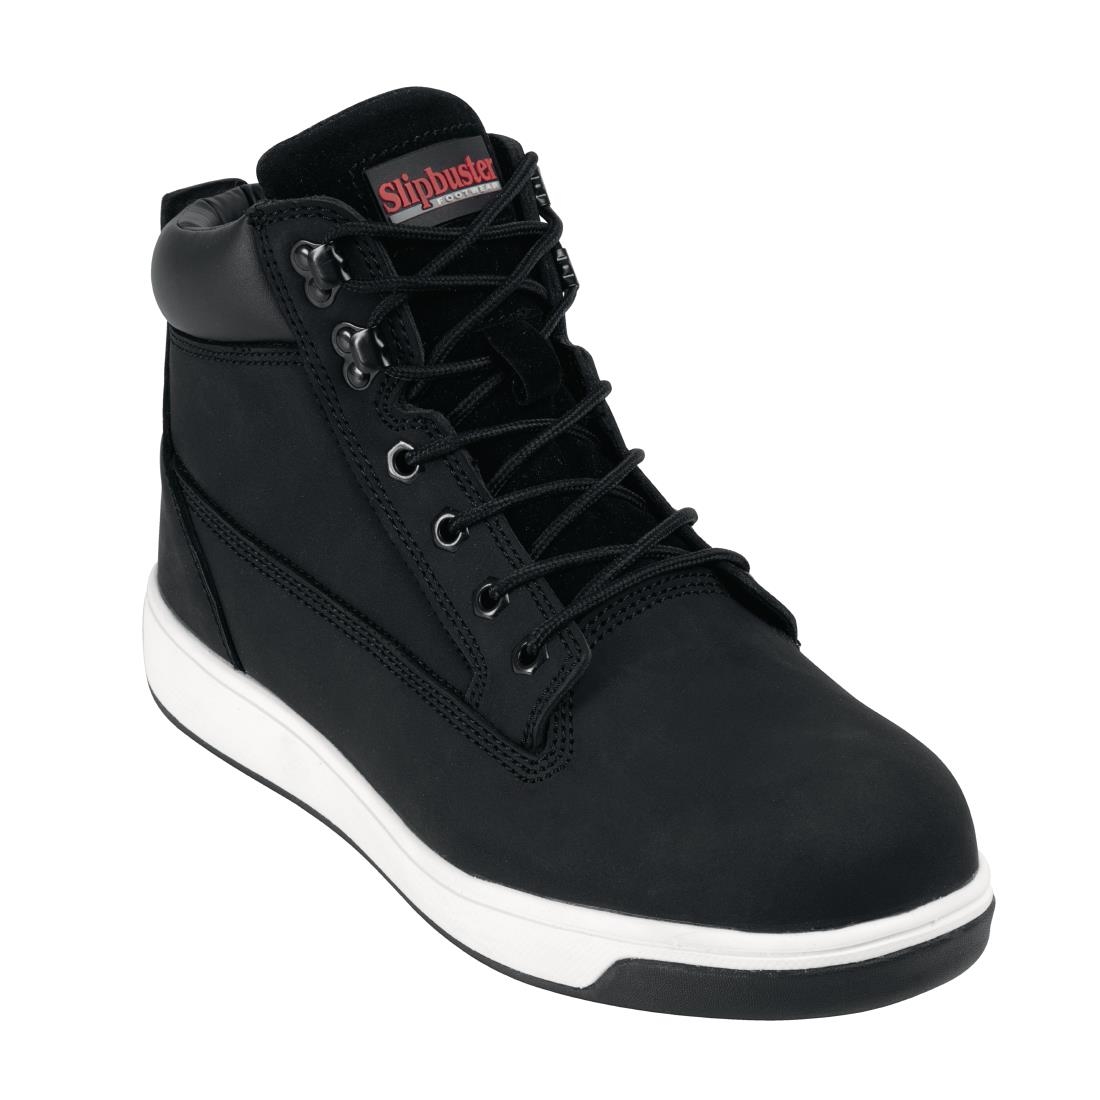 Slipbuster Sneaker Boots Black 41